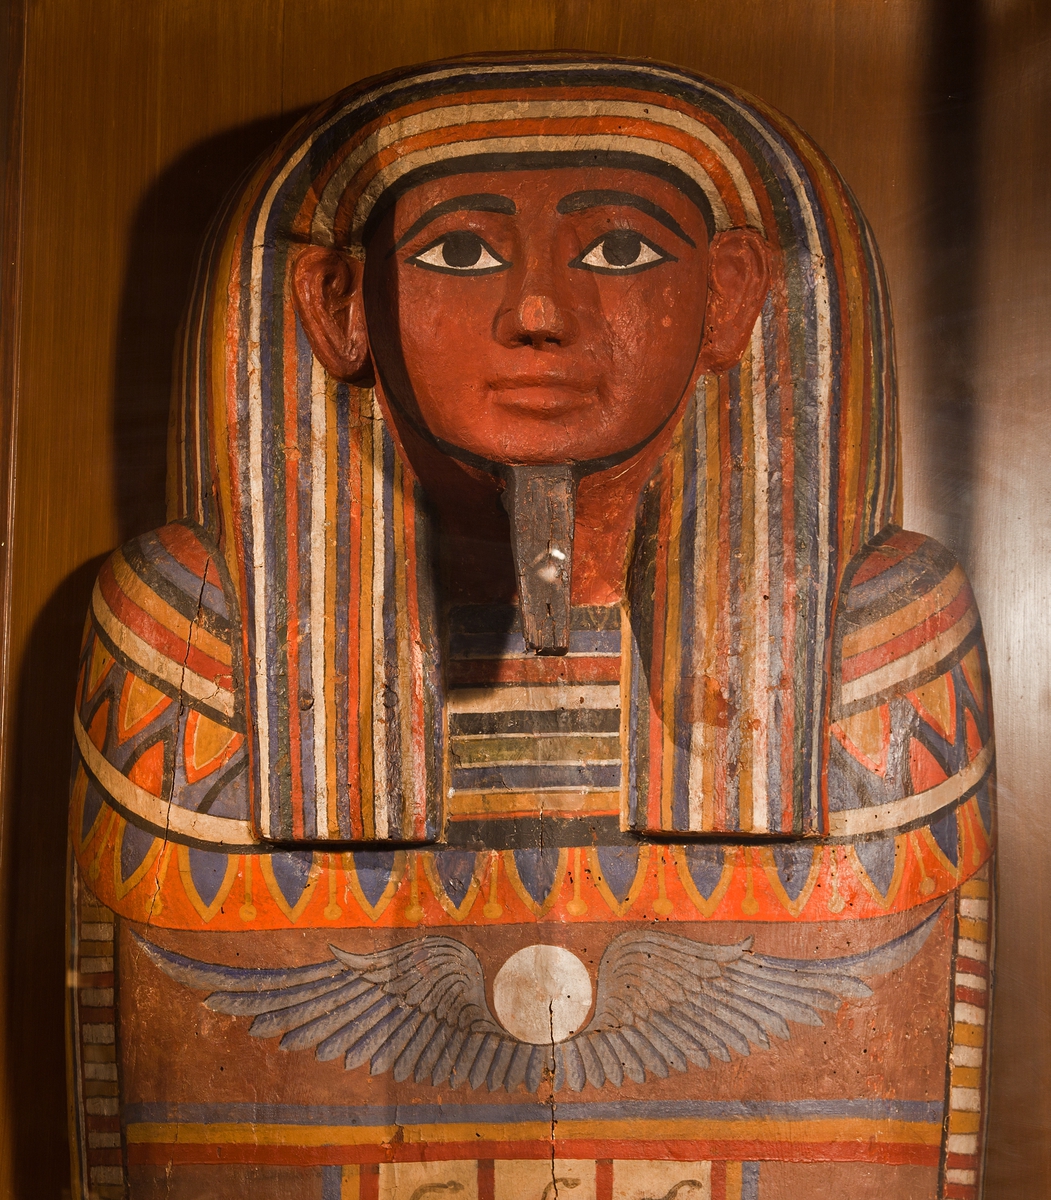 Mumiekista/sarkofag. Kistan har troligen innehållit en mindre kista som i sin tur innehållit en mumie. Locket är till största delen ommålat på 1800-talet.